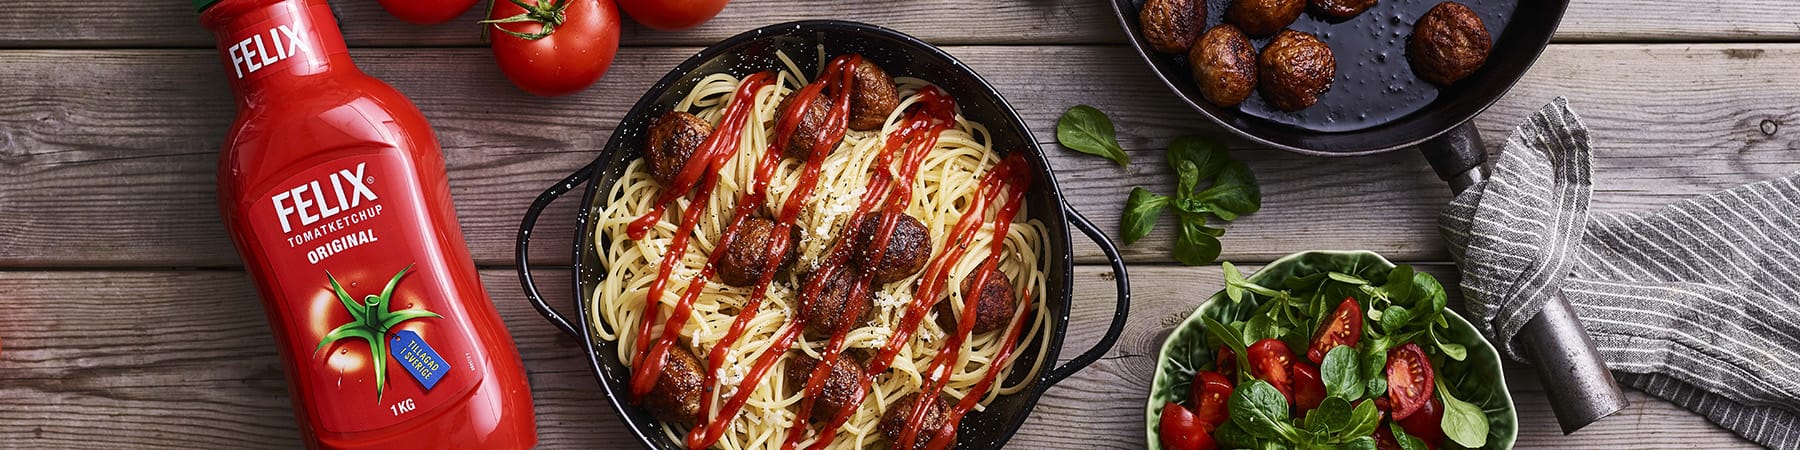 Felix tomatketchup och tallrik med spagetti och köttbullar